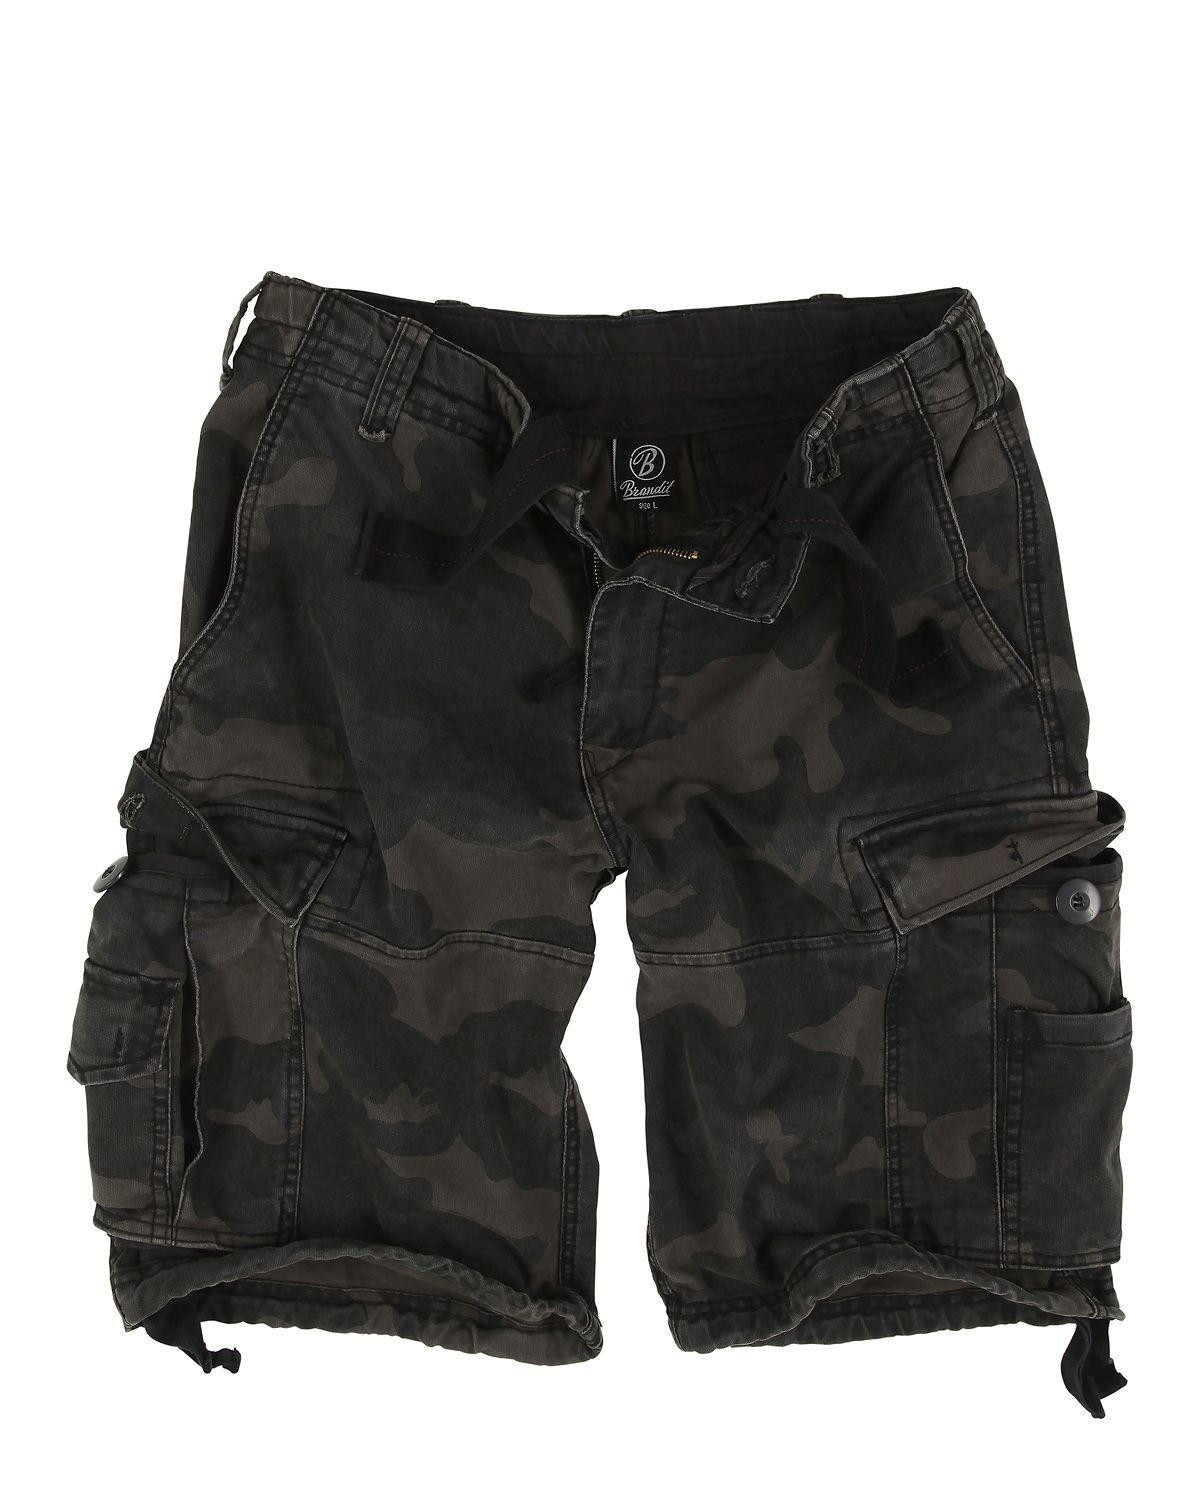 Brandit Vintage Shorts (Black Camo, L)